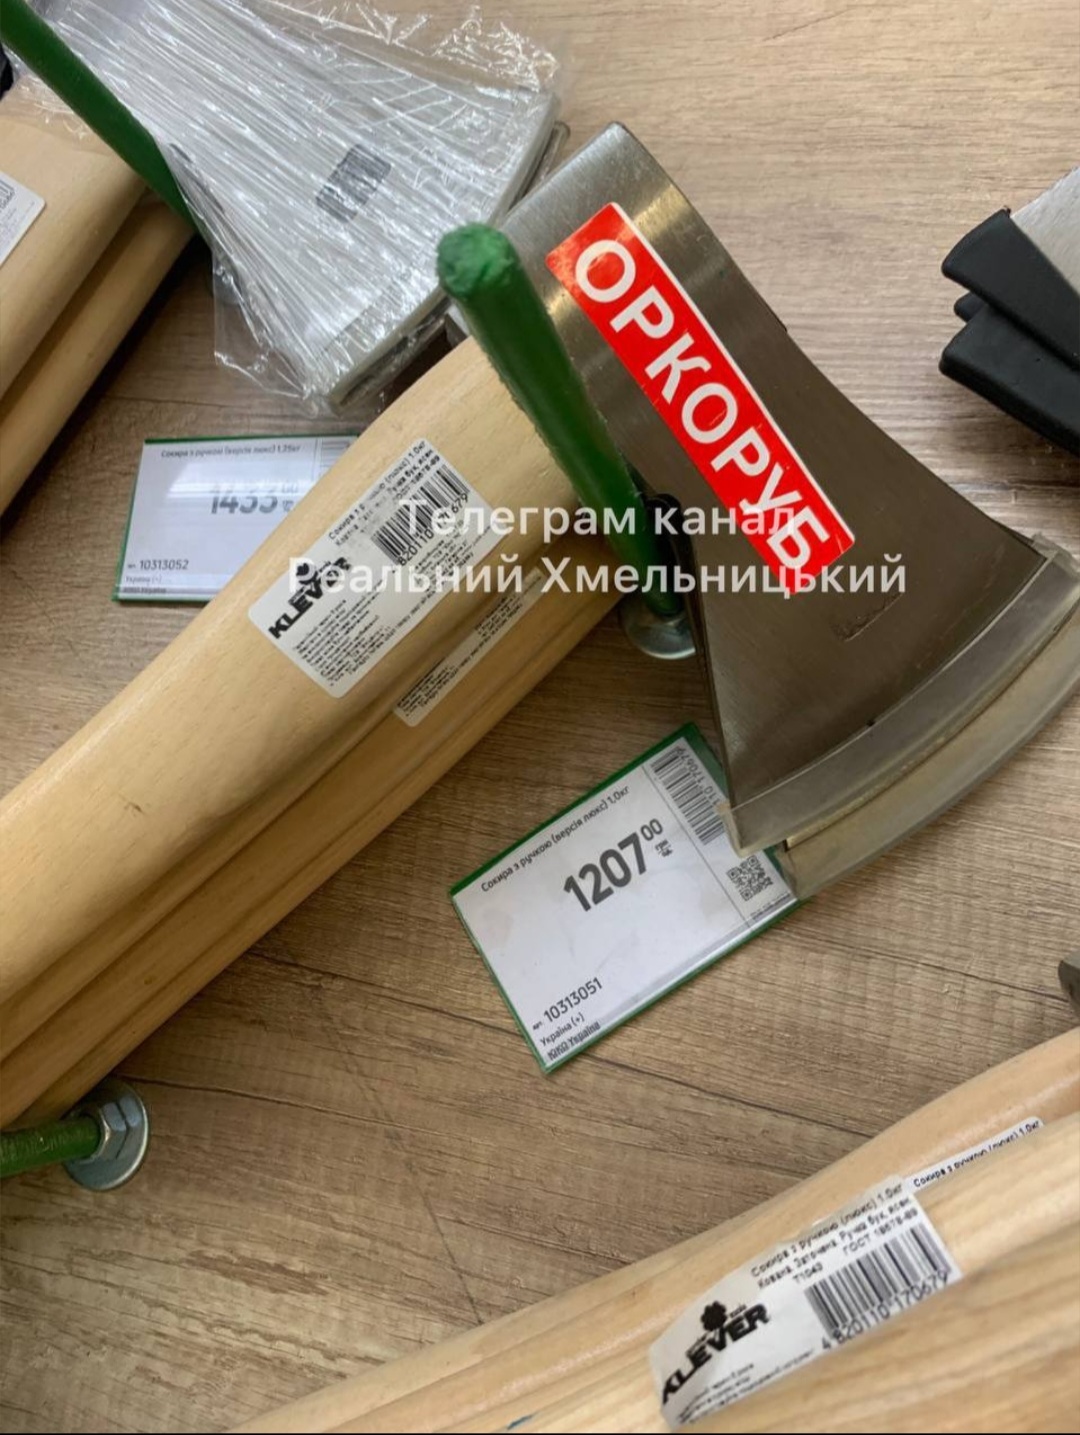 У Хмельницькому з'явилися у продажу оркоруби ( ФОТО)